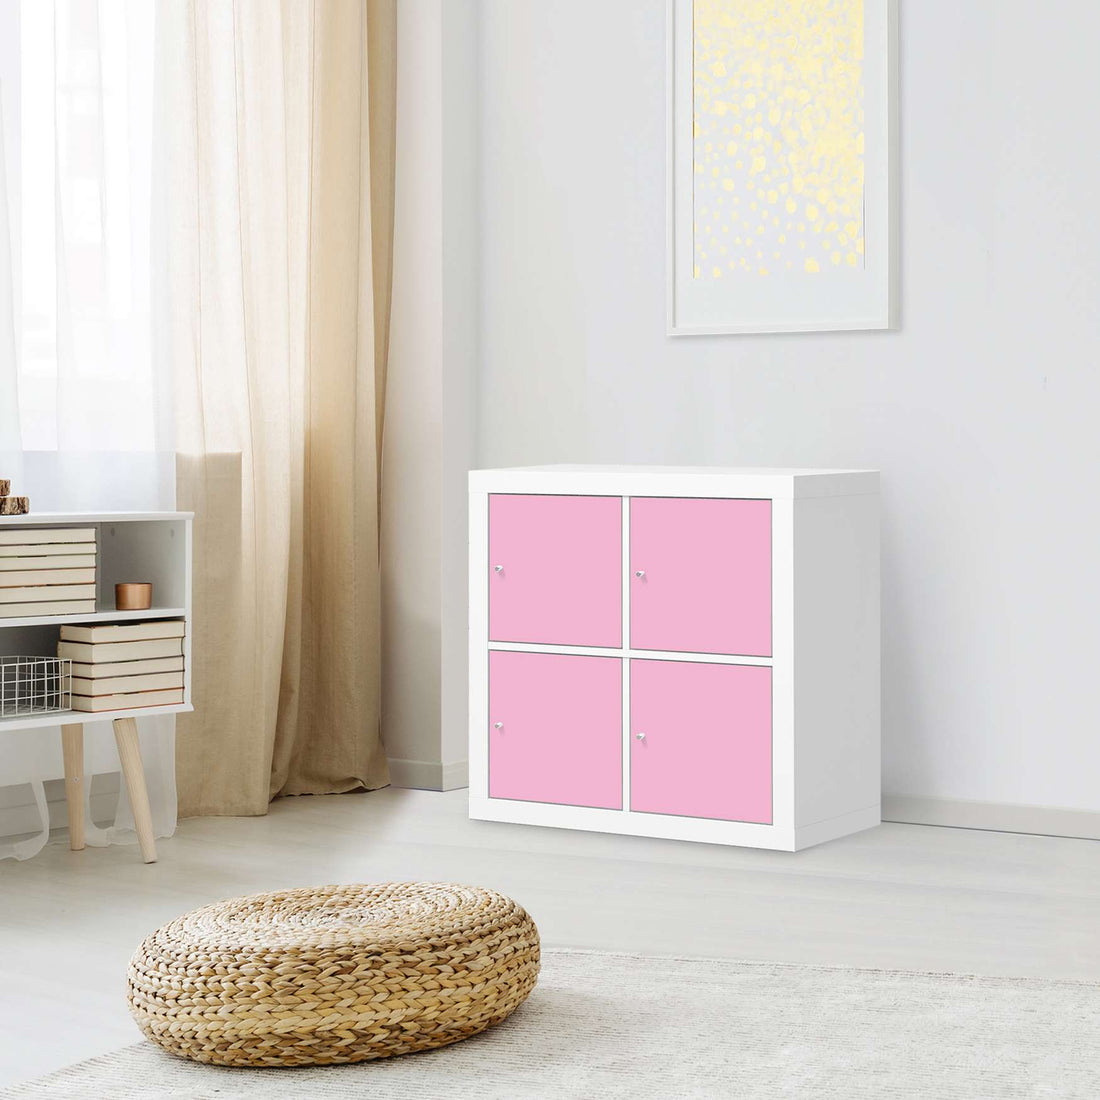 Möbelfolie Pink Light - IKEA Expedit Regal 4 Türen - Wohnzimmer